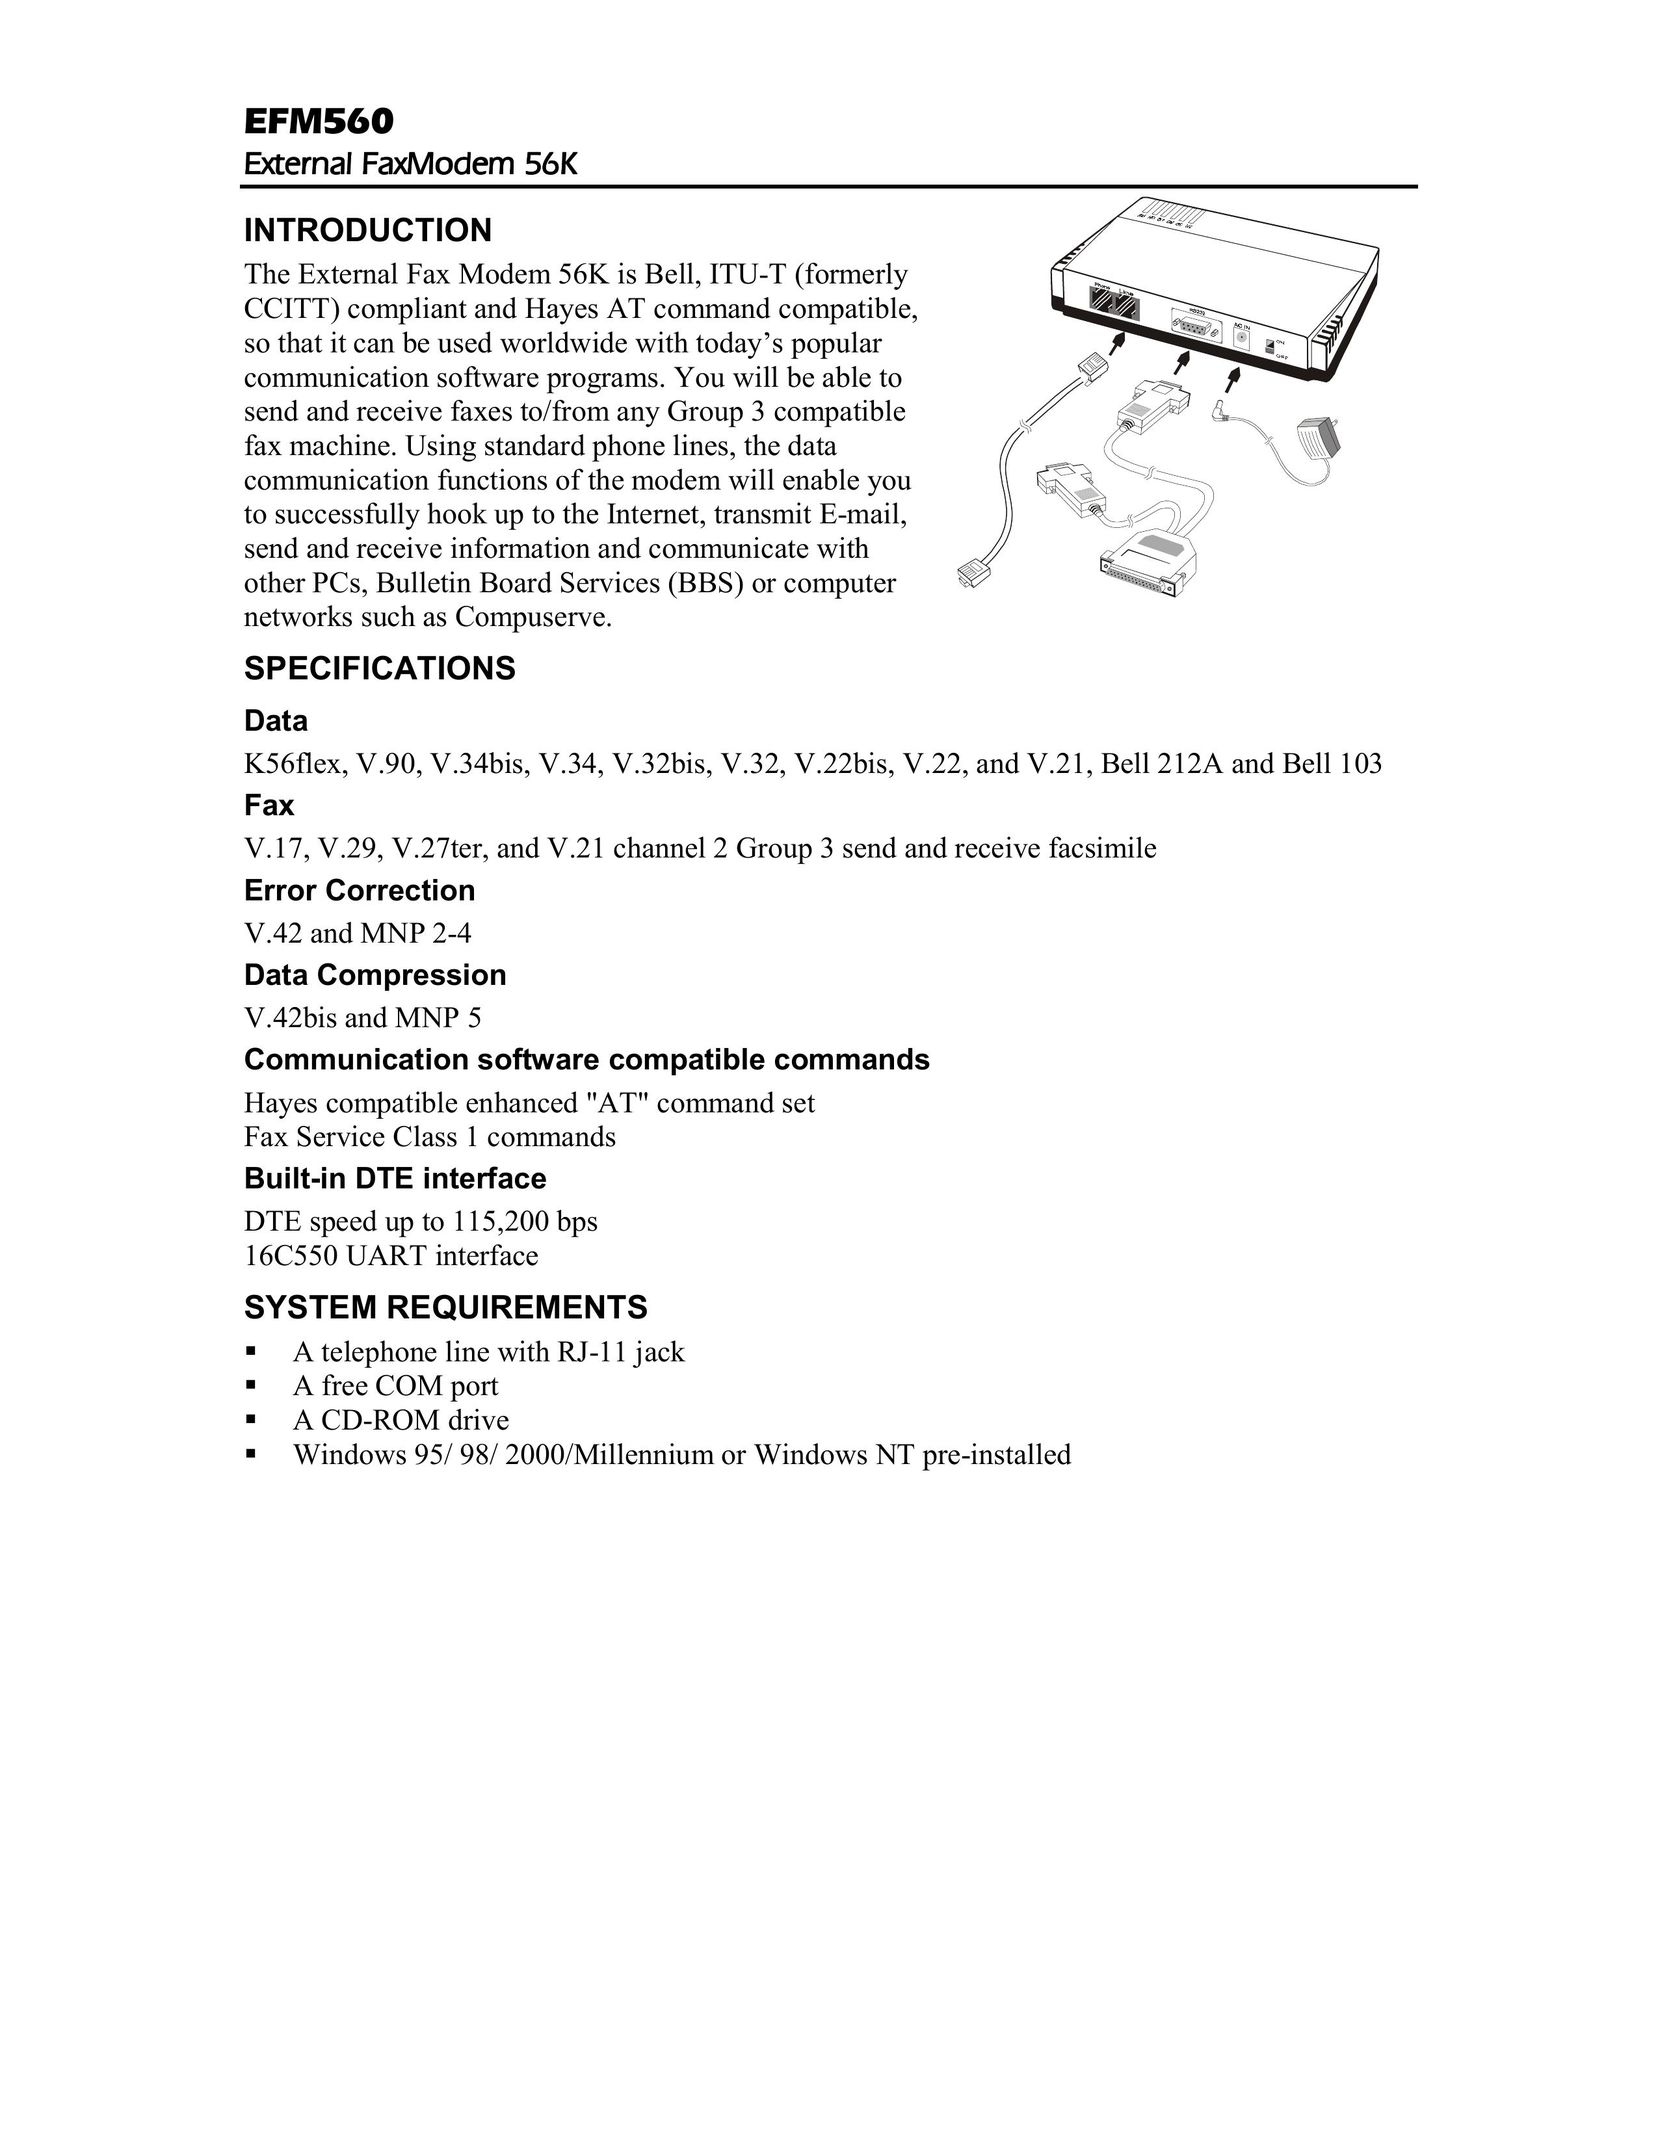 Abocom EFM560 Network Card User Manual